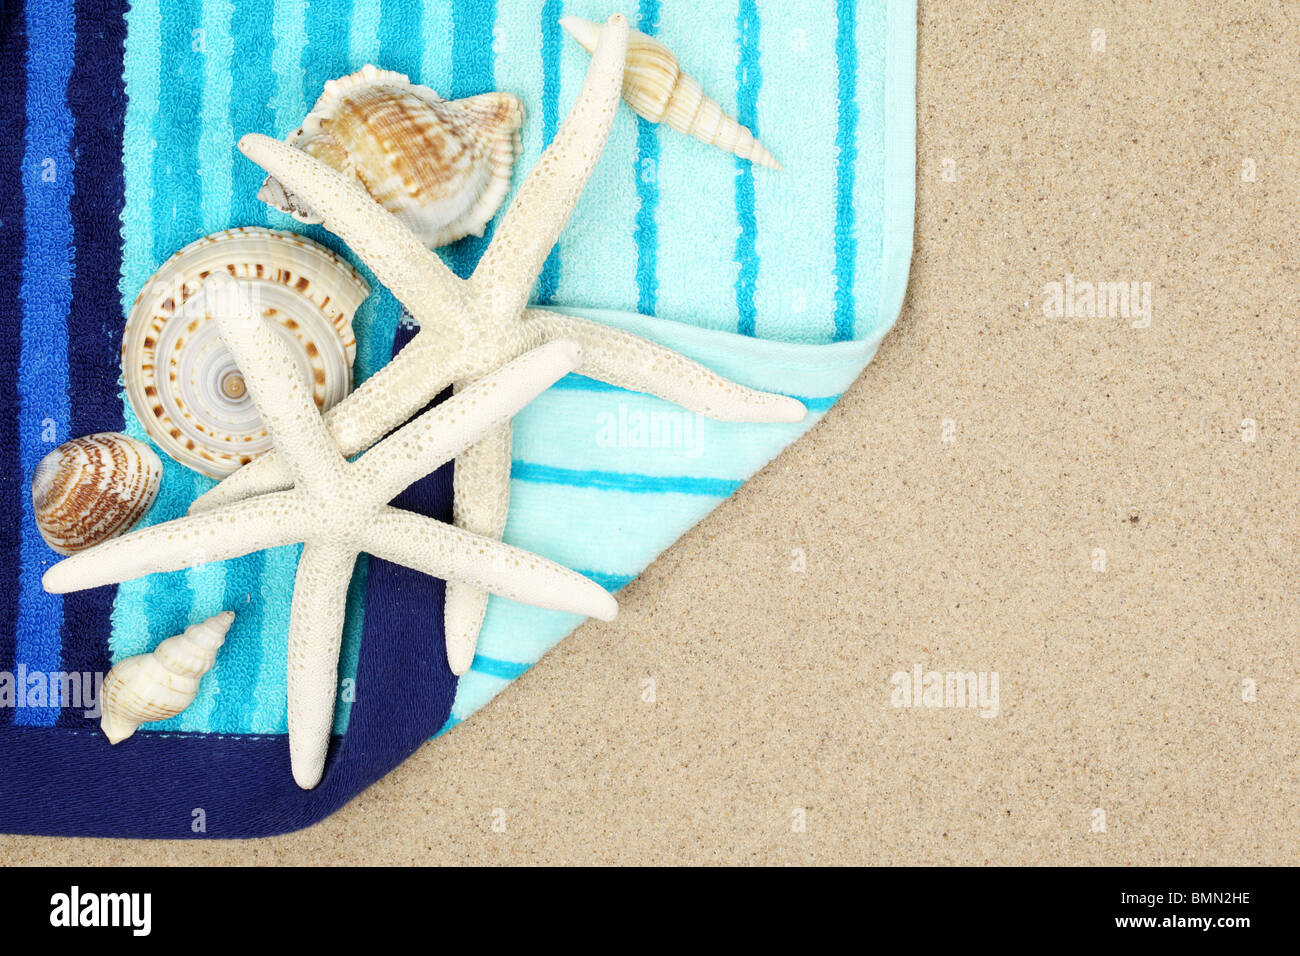 Conchiglie Rigate e telo mare sulla spiaggia di sabbia,Closeup. Foto Stock